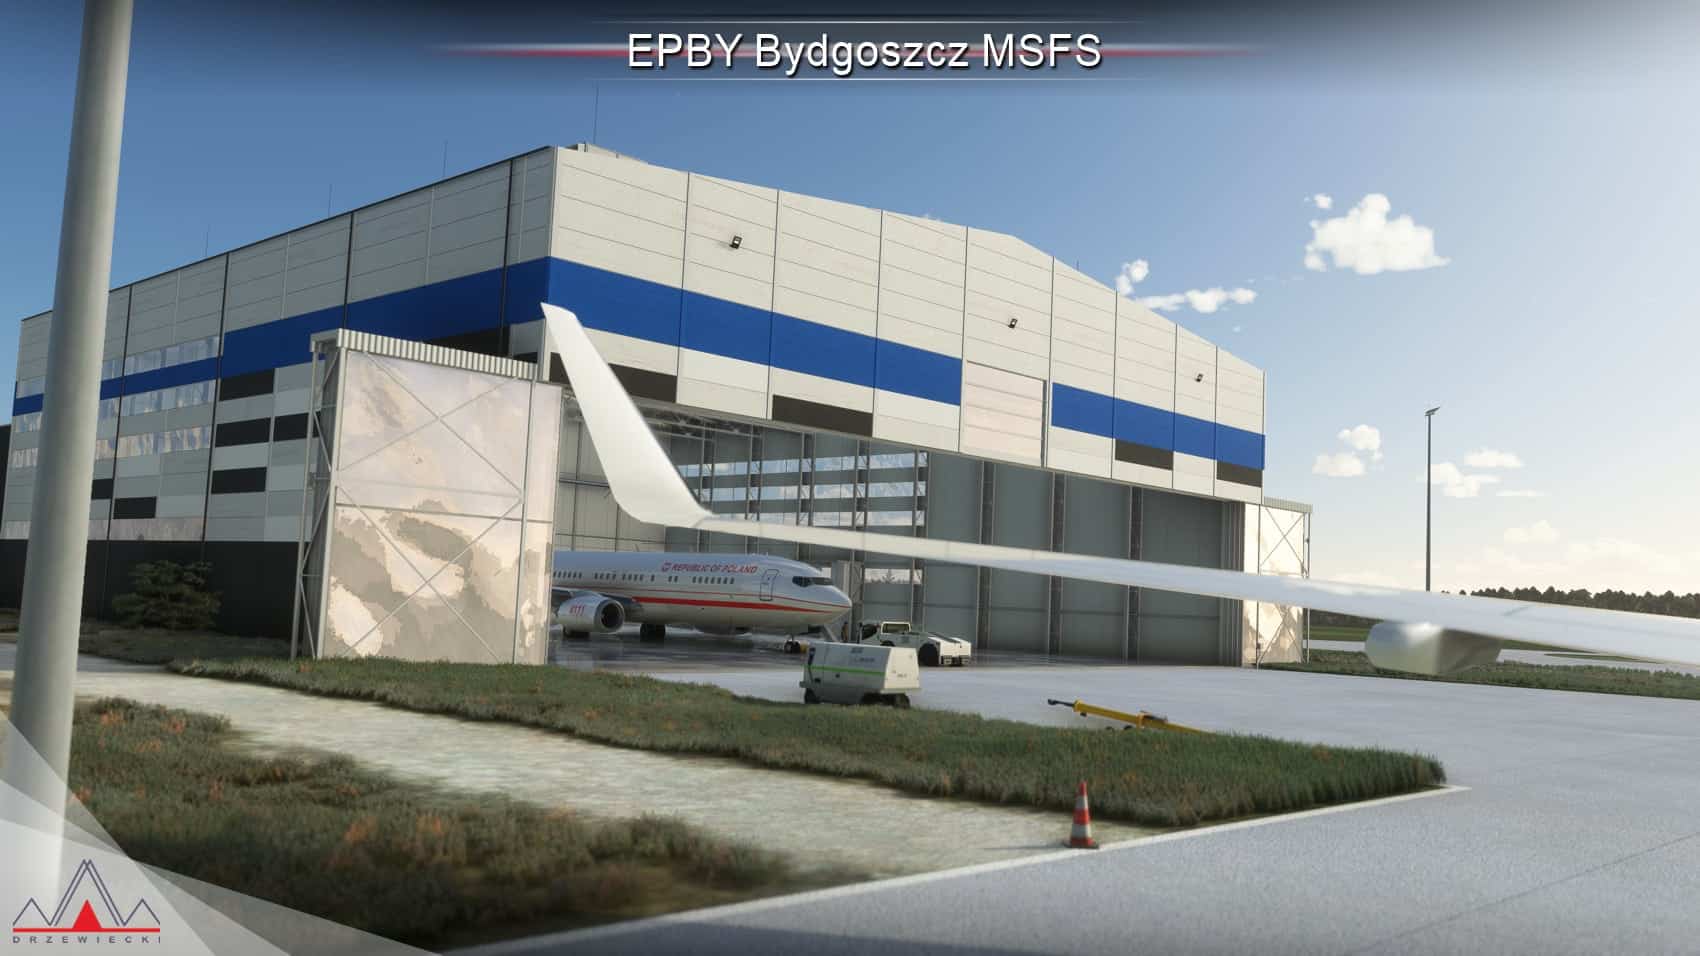 Drzewiecki Design Releases Bydgoszcz for MSFS - Drzewiecki Design, Microsoft Flight Simulator